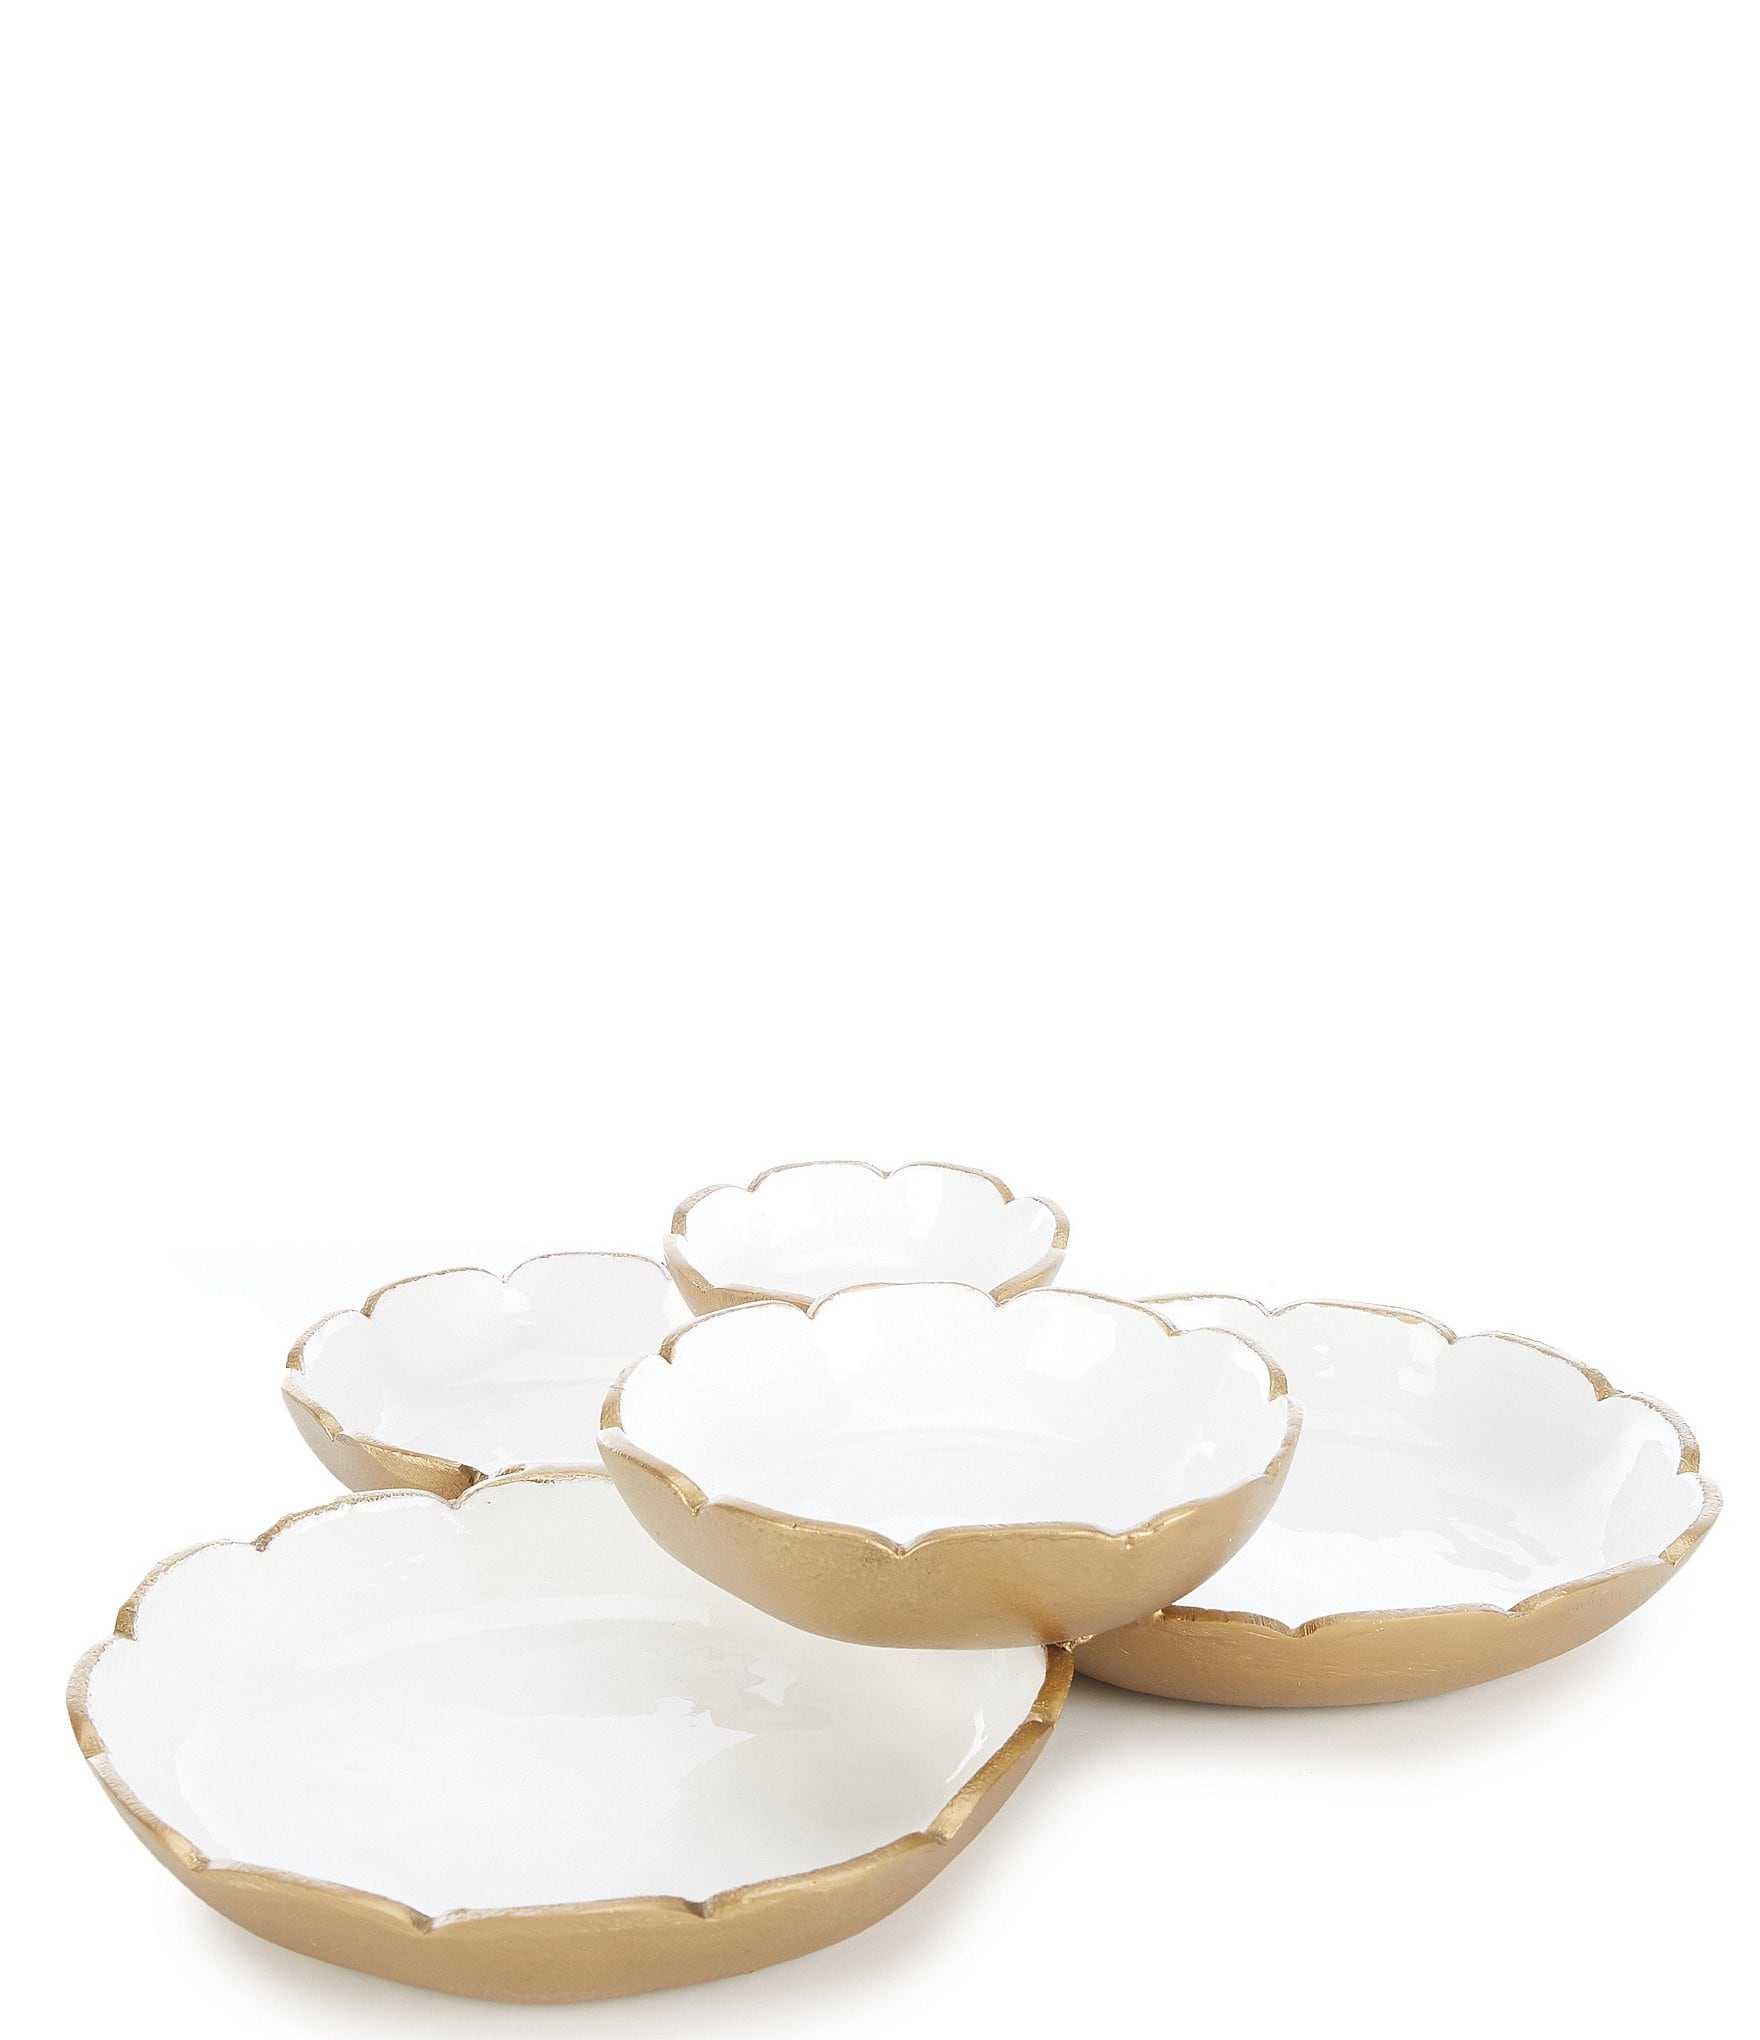 Golden Rabbit Enamelware Solid Textured White Dinner Plates, Set of 4